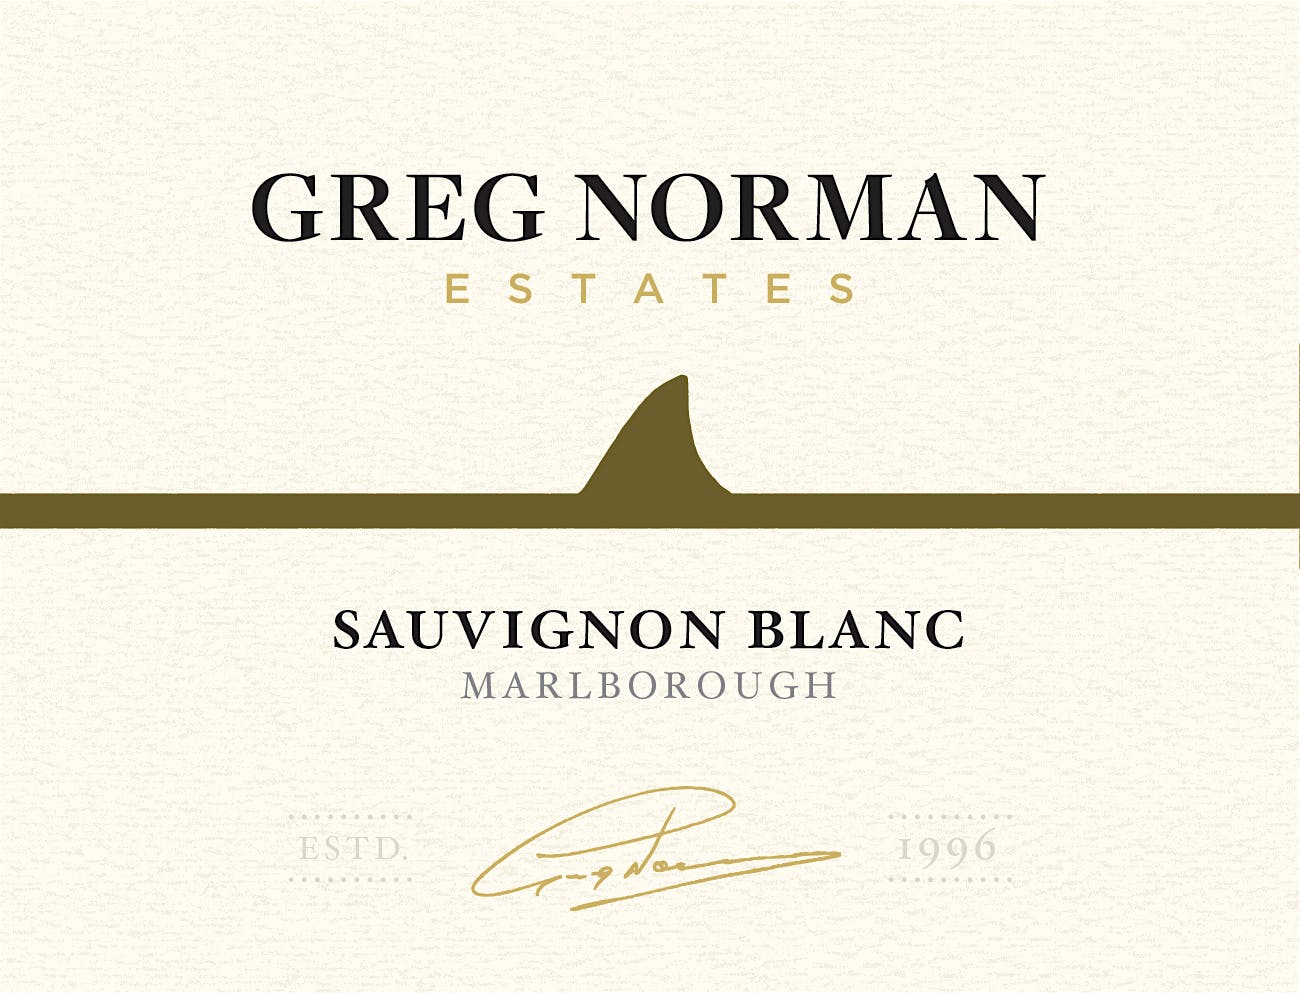 Label for Greg Norman Estates